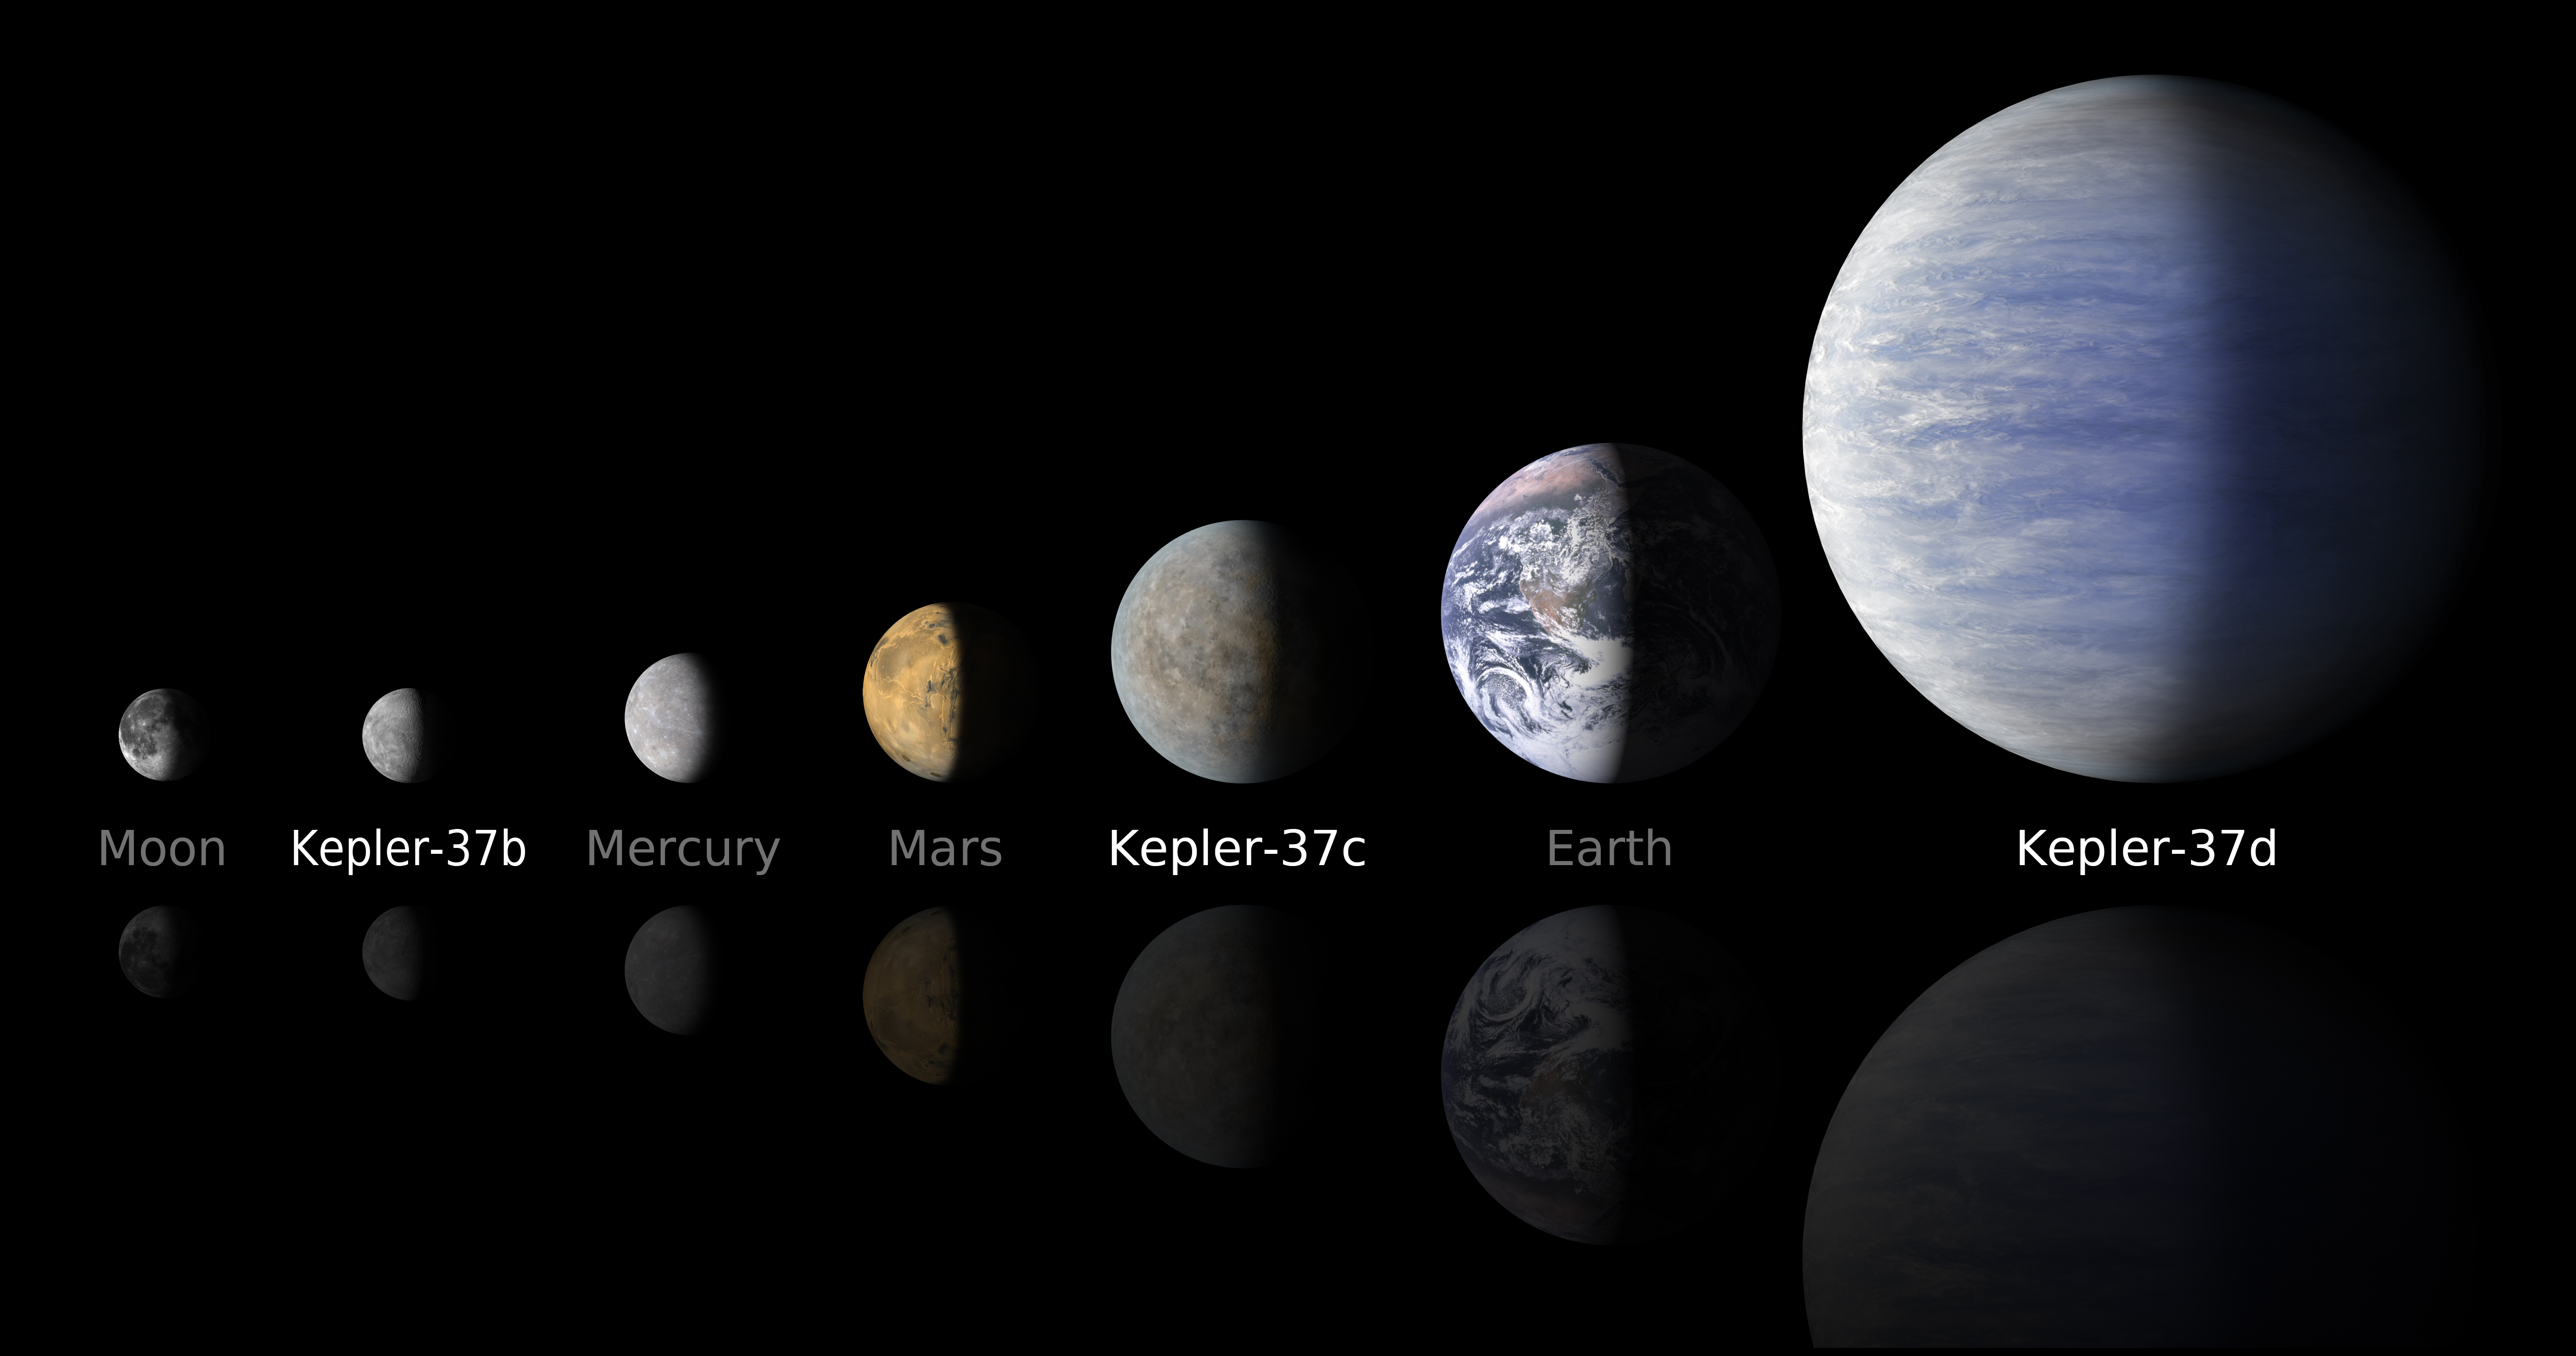 Sammenligning av størrelsene til planetene i Kepler-37-systemet og planeter i vårt solsystem. Illustrasjon: NASA/Ames/JPL-Caltech